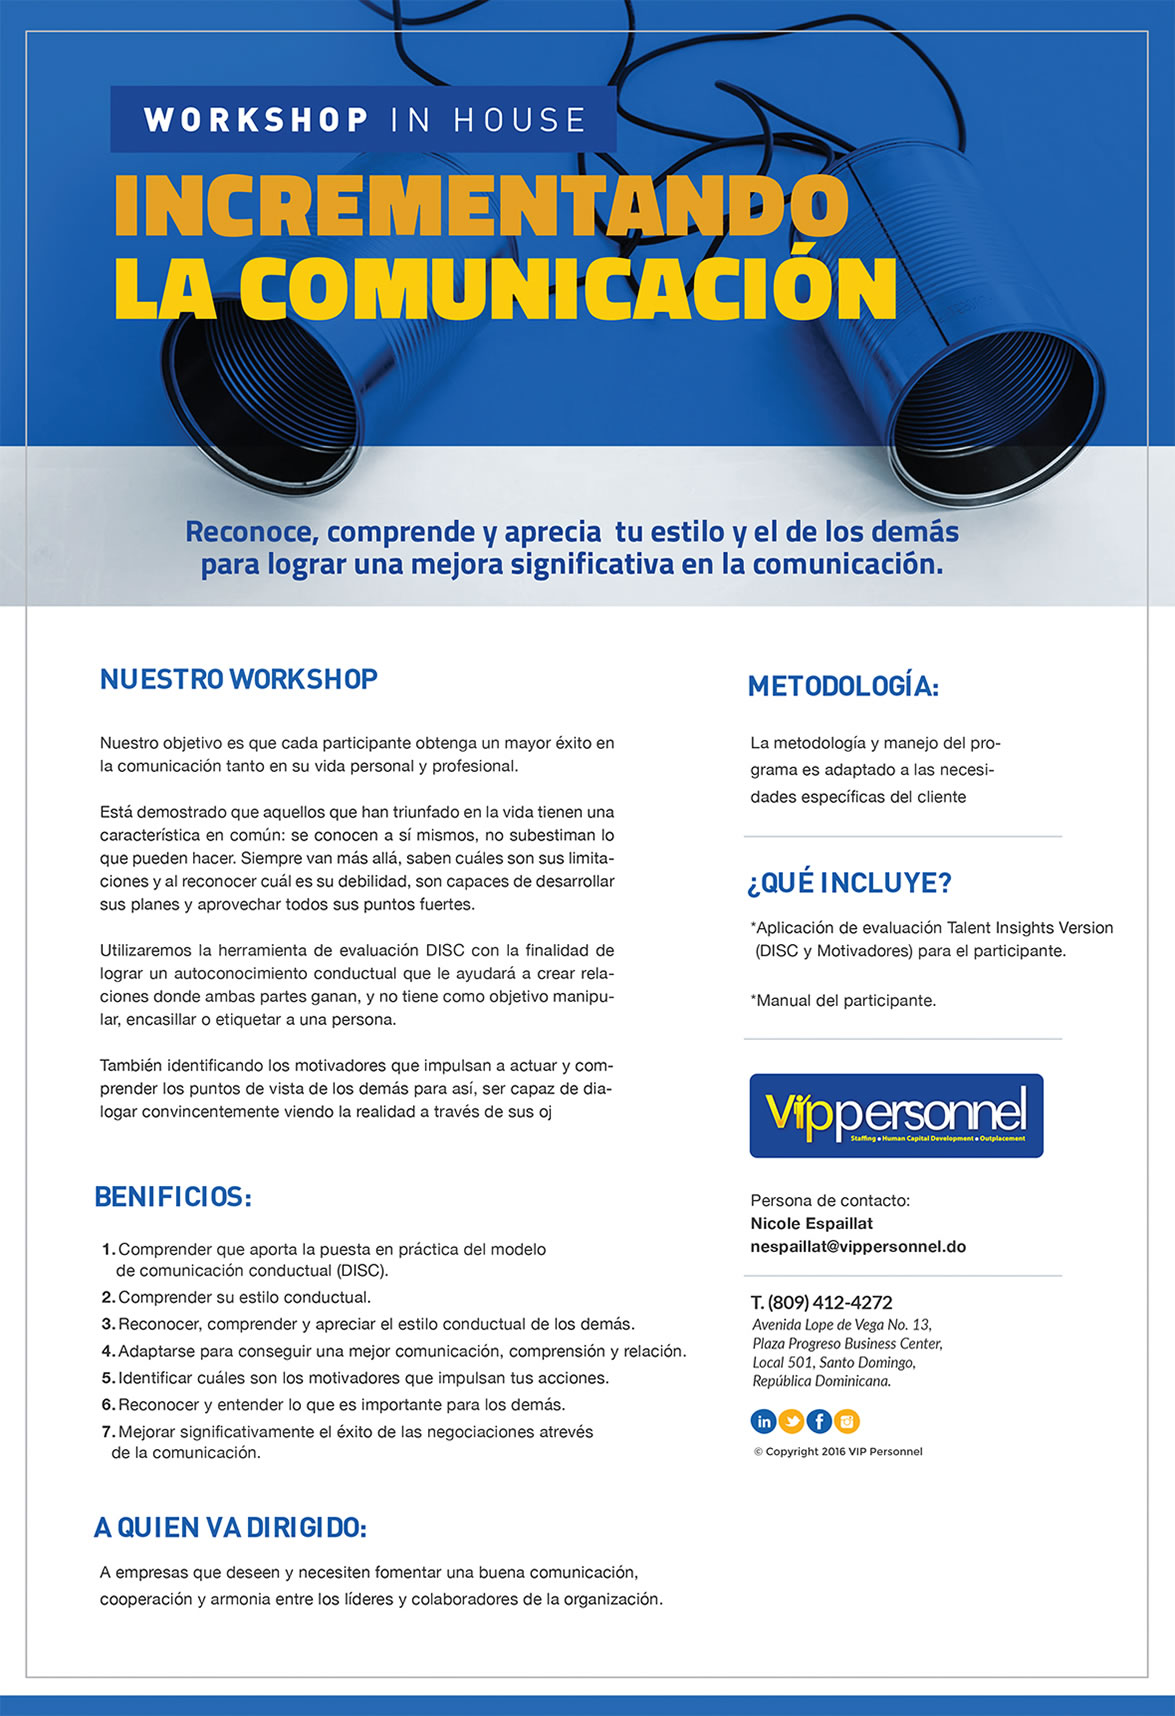 Workshop Incrementando la Comunicación